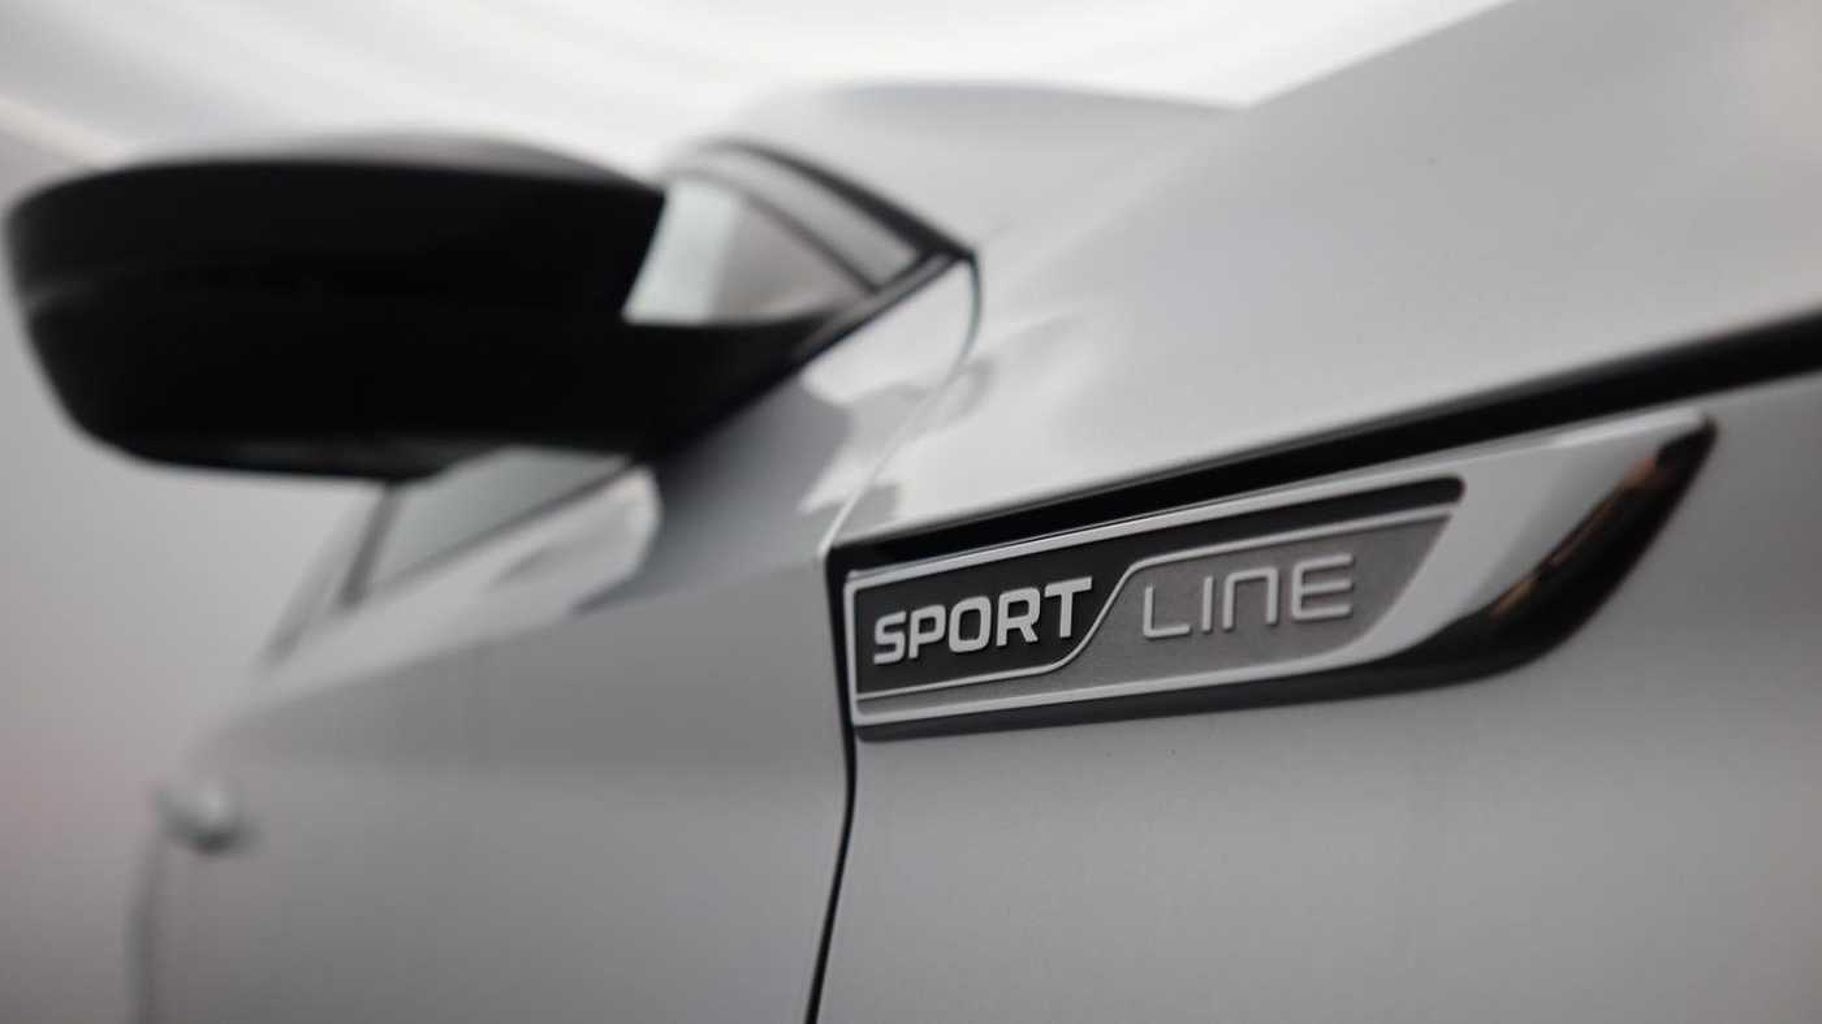 SKODA Superb 1.5 TSI (150ps) SportLine ACT DSG Hatchback